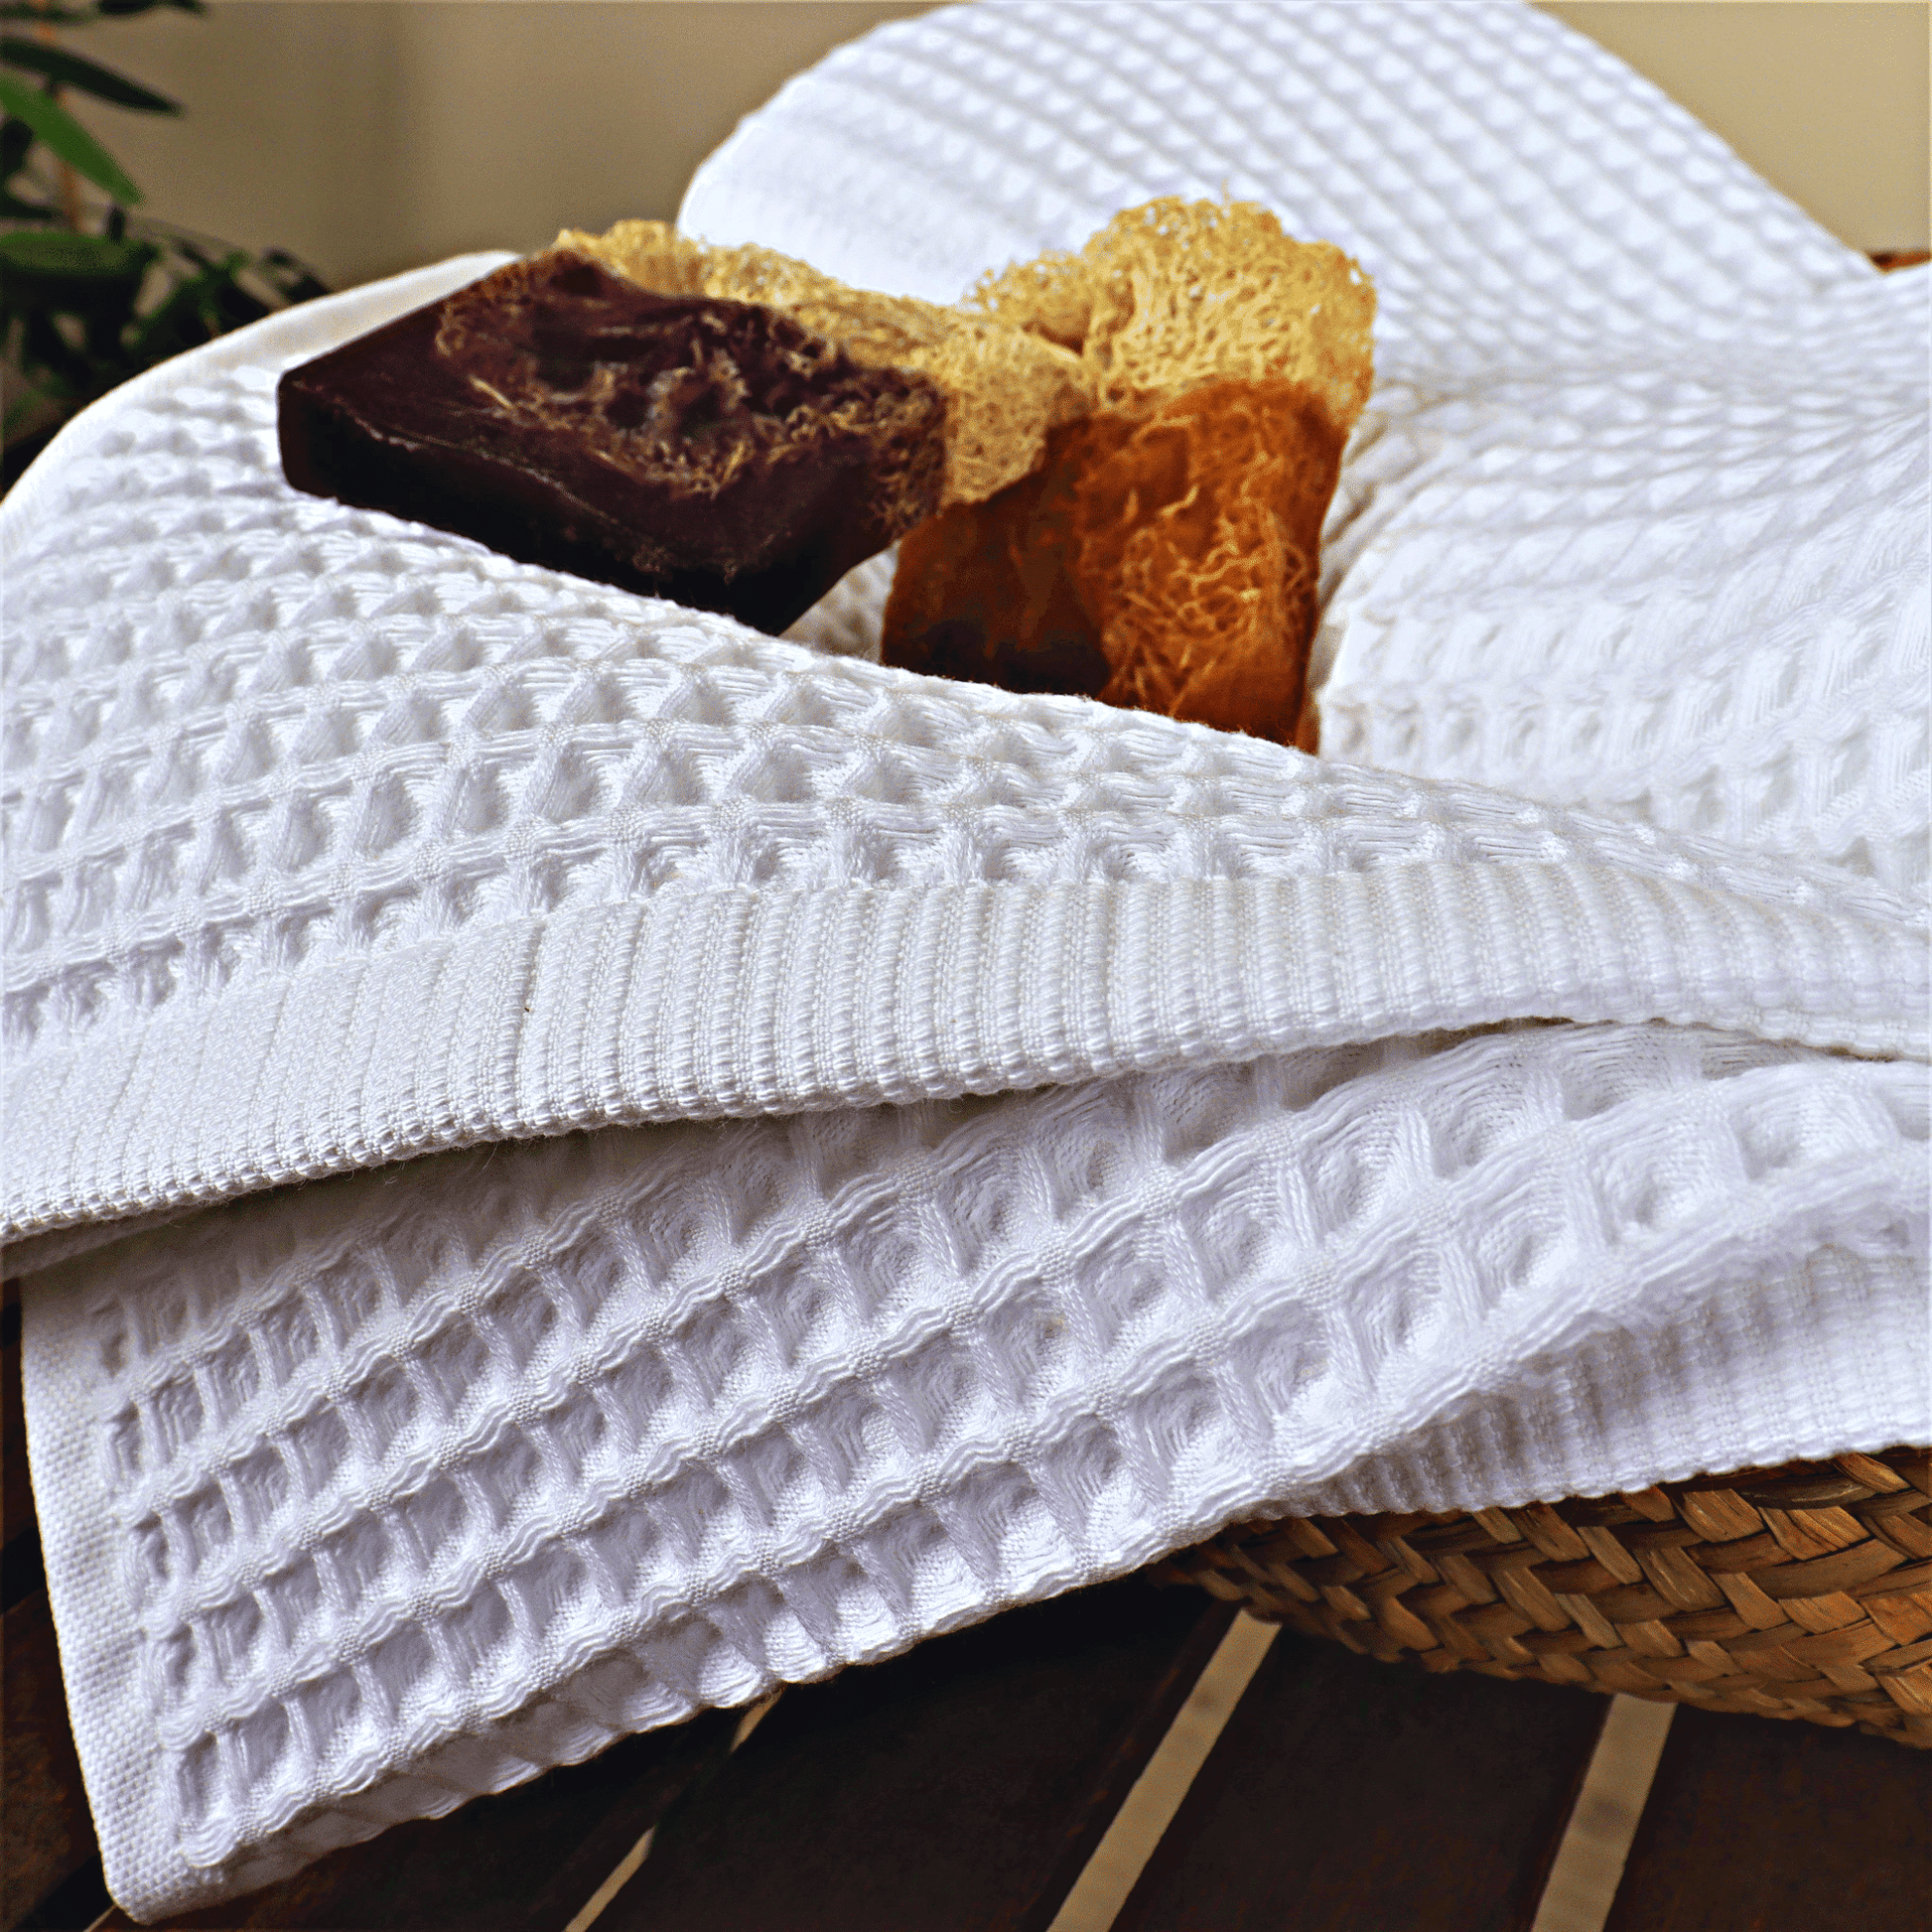 Waffle Weave Fringe Hand Towel - White